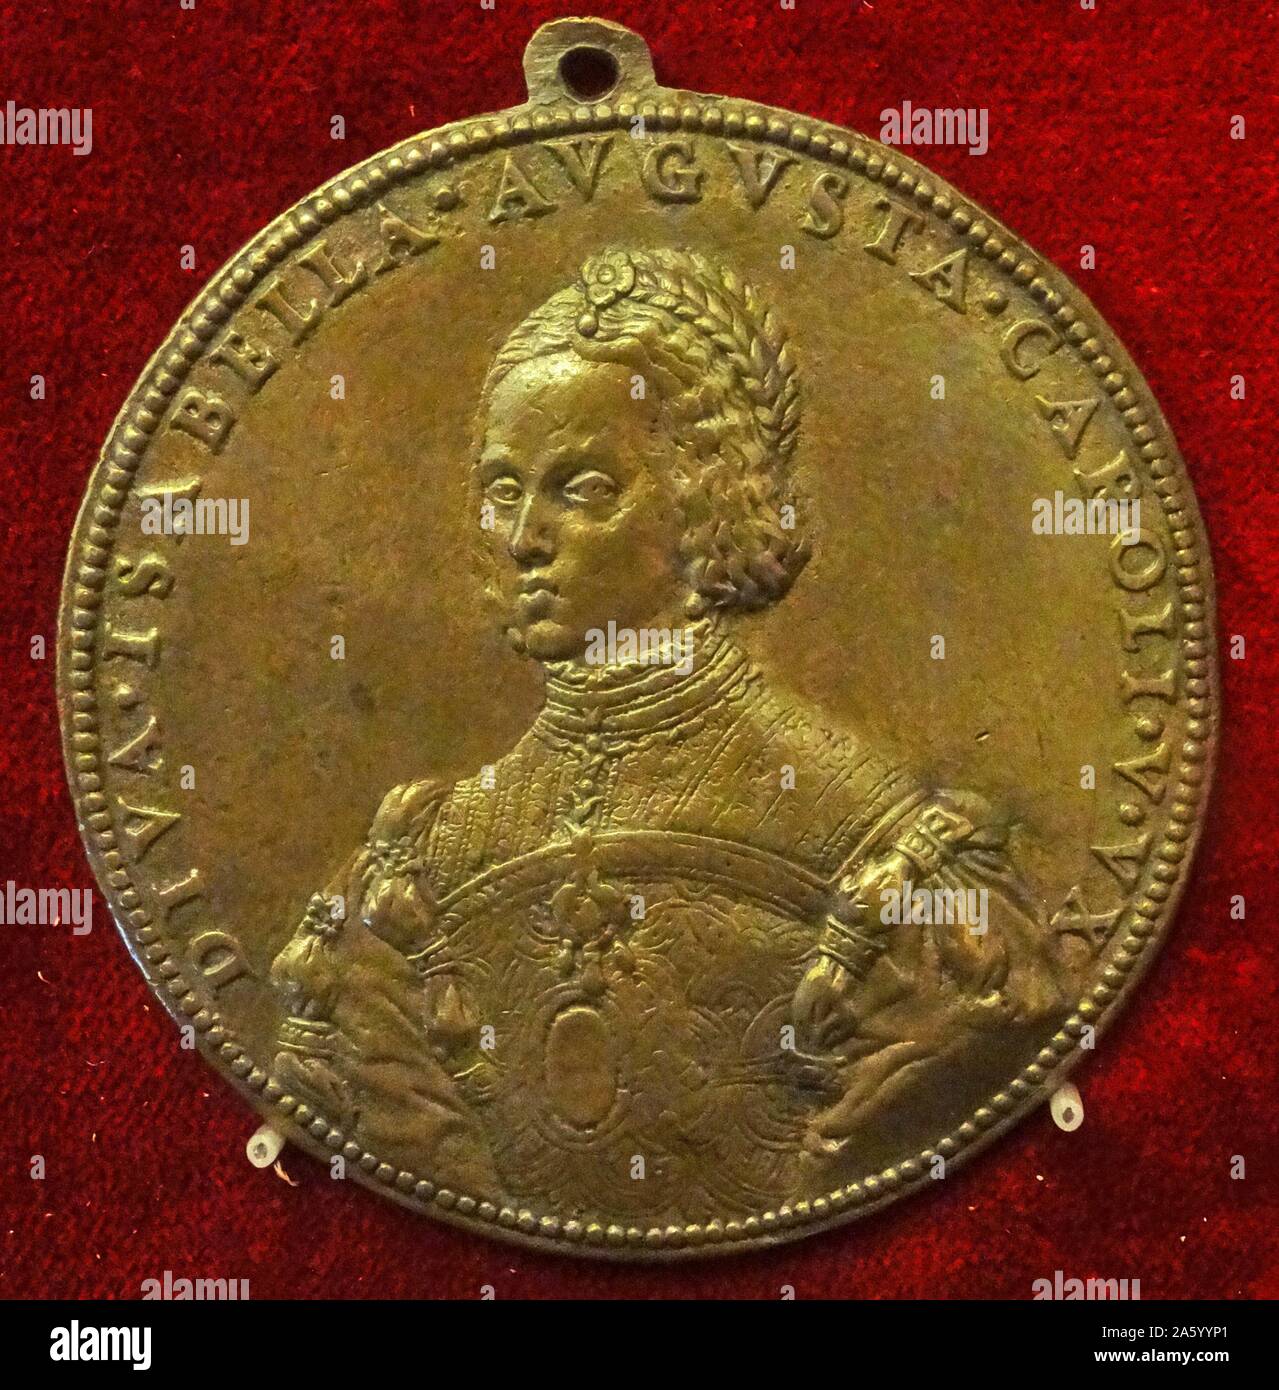 Coin Isabella di Portogallo, regina di Castiglia (1428-1496) regina consorte di Castiglia e León. Xv secolo Foto Stock